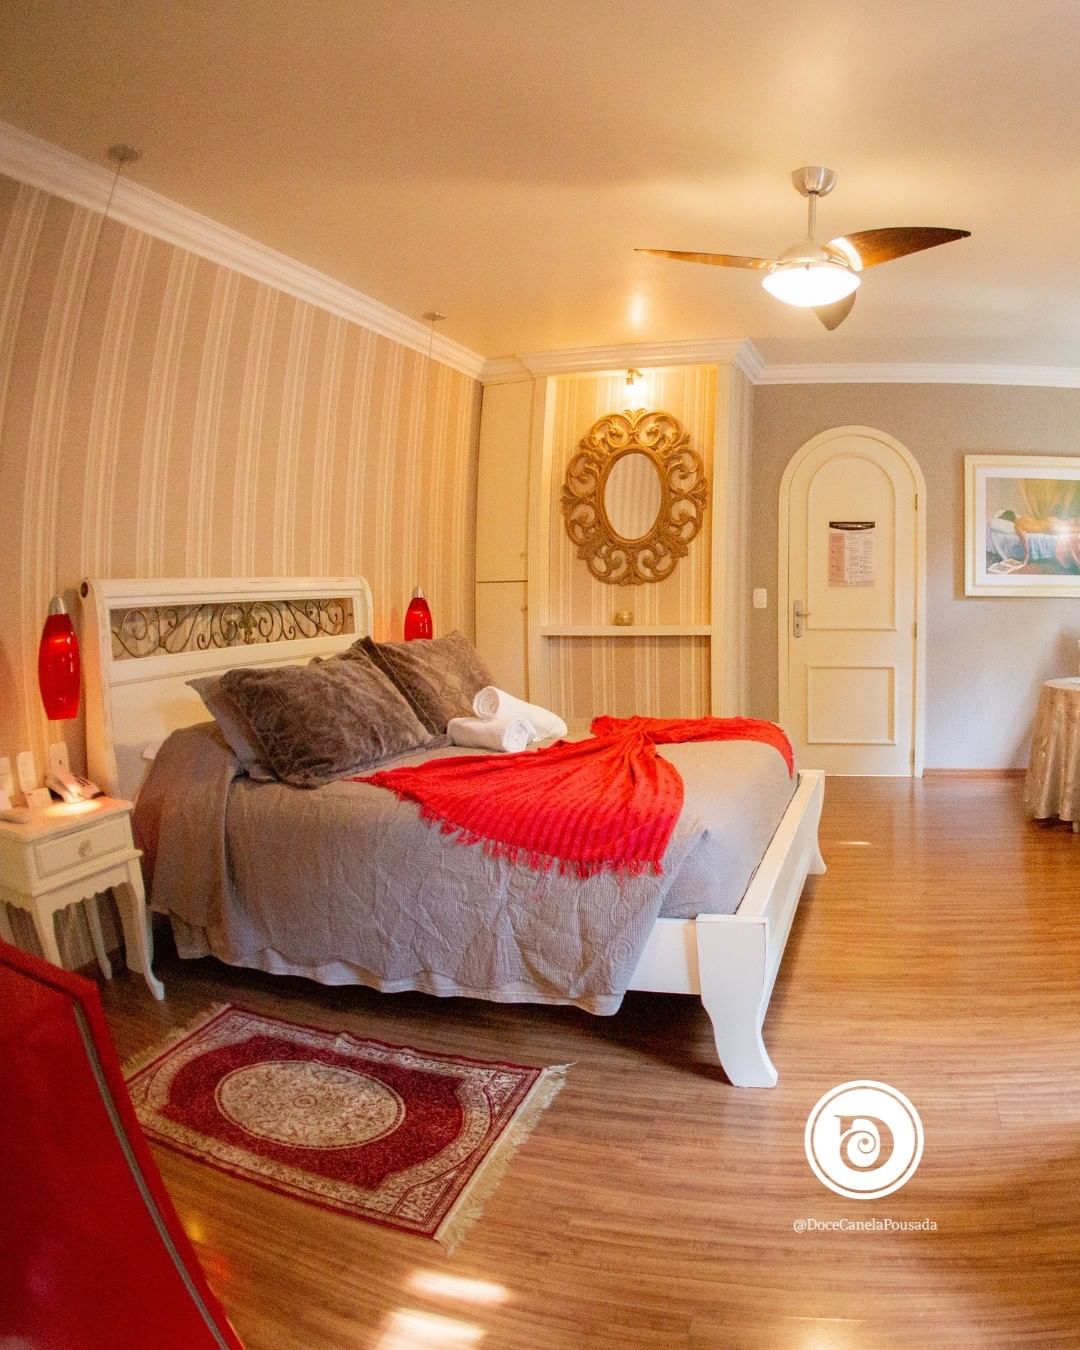 Hotéis em Canela: com decorações românticas, o Doce Canela é uma bela opção